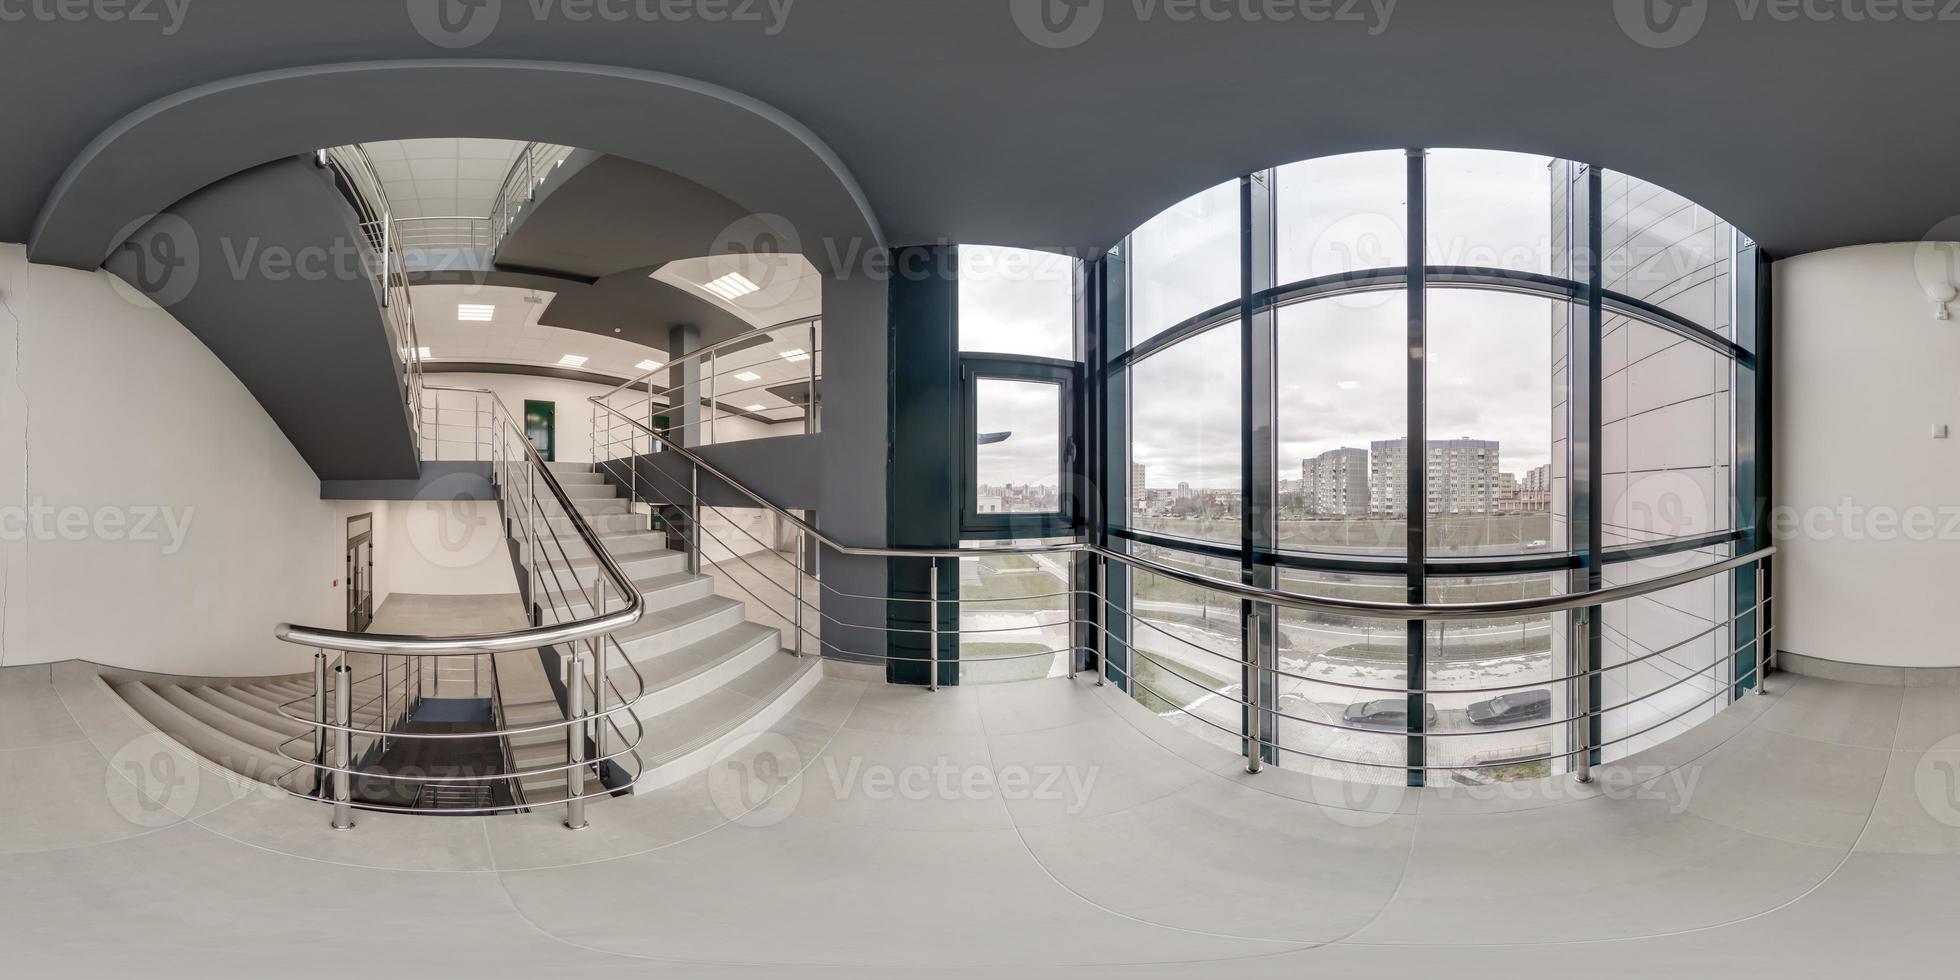 full sömlös sfärisk hdri 360 panorama se i tömma modern hall nära panorama- fönster med kolumner, trappa och dörrar i likriktad utsprång, redo för ar vr innehåll foto